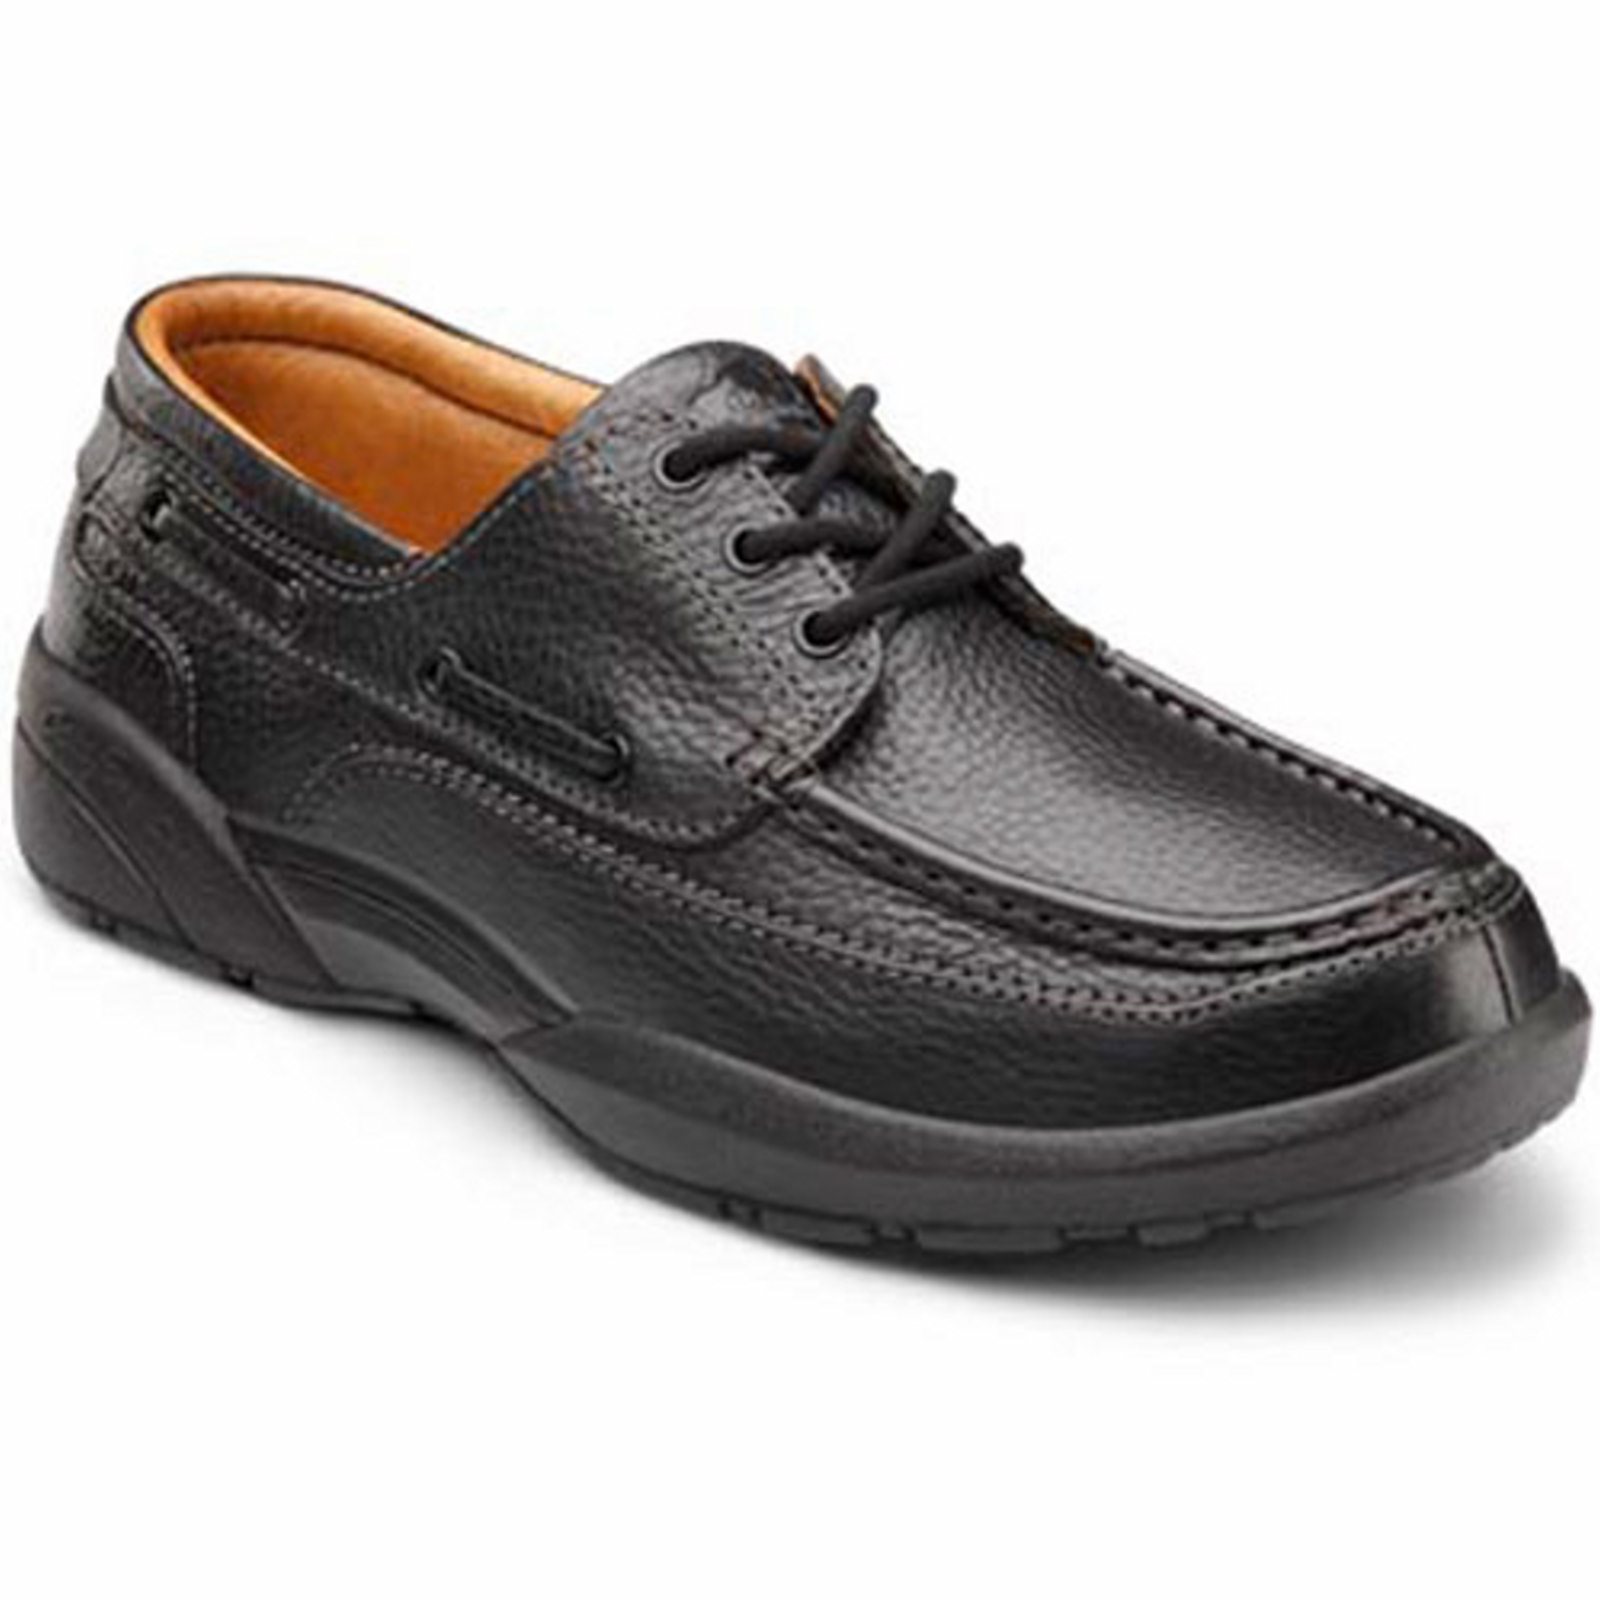 Dr. Comfort Patrick Men's Boat Shoe: 14 Wide (E/2E) Black Lace - image 1 of 4